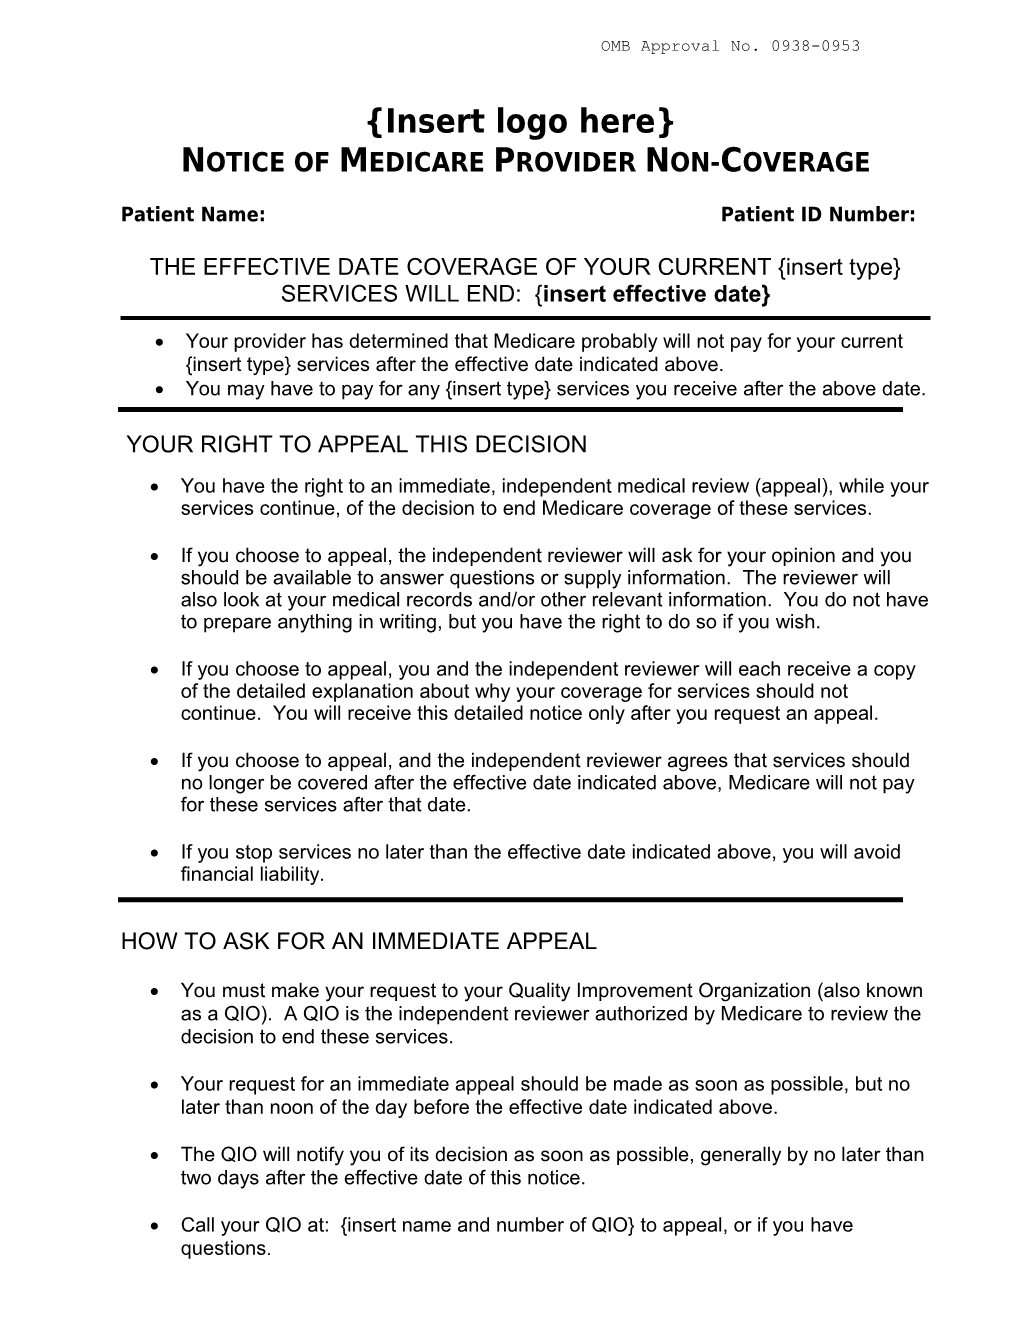 Notice of Medicare Provider Non-Coverage